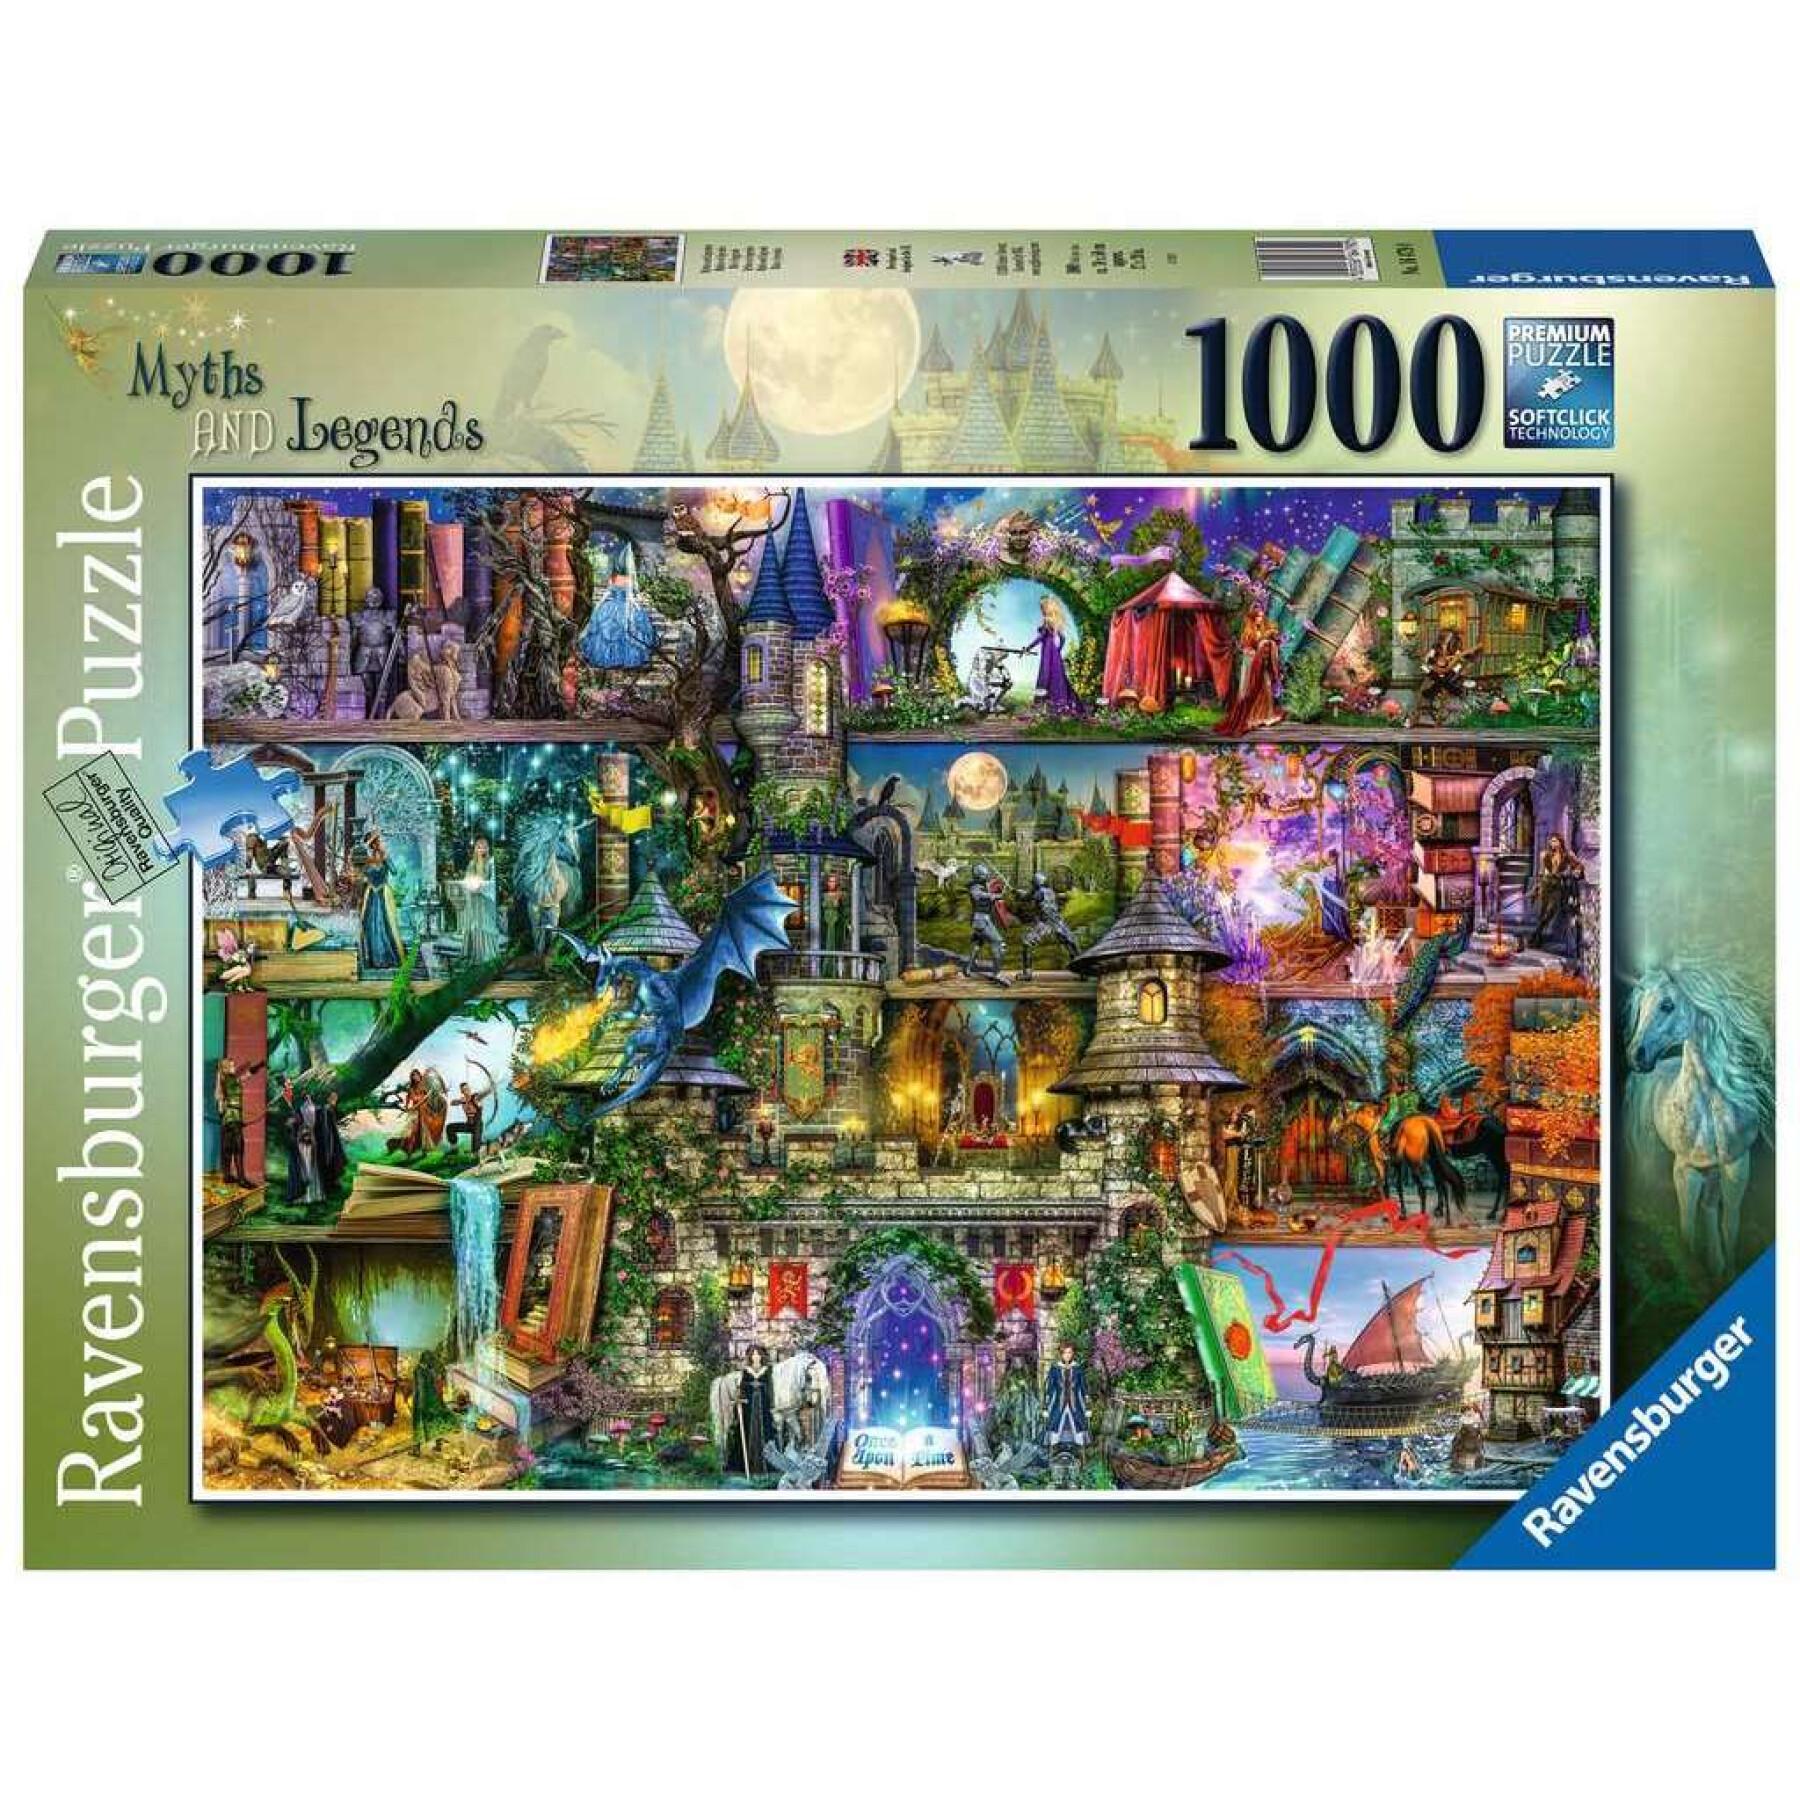 Puzzle mit 1000 Teilen Mythen und Legenden Ravensburger